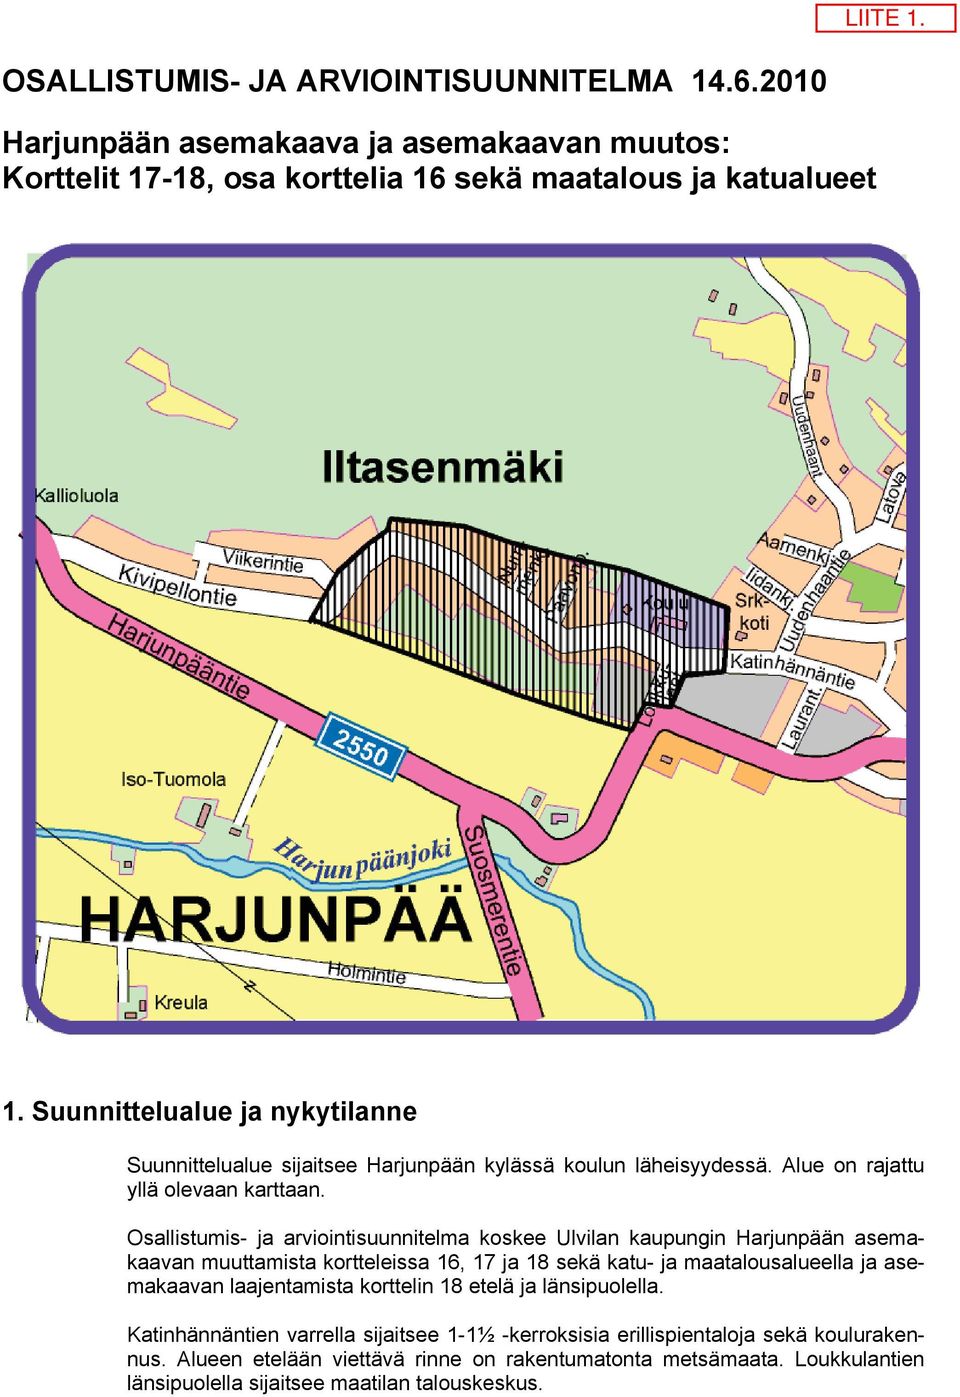 Osallistumis- ja arviointisuunnitelma koskee Ulvilan kaupungin Harjunpään asemakaavan muuttamista kortteleissa 6, 7 ja 8 sekä katu- ja maatalousalueella ja asemakaavan